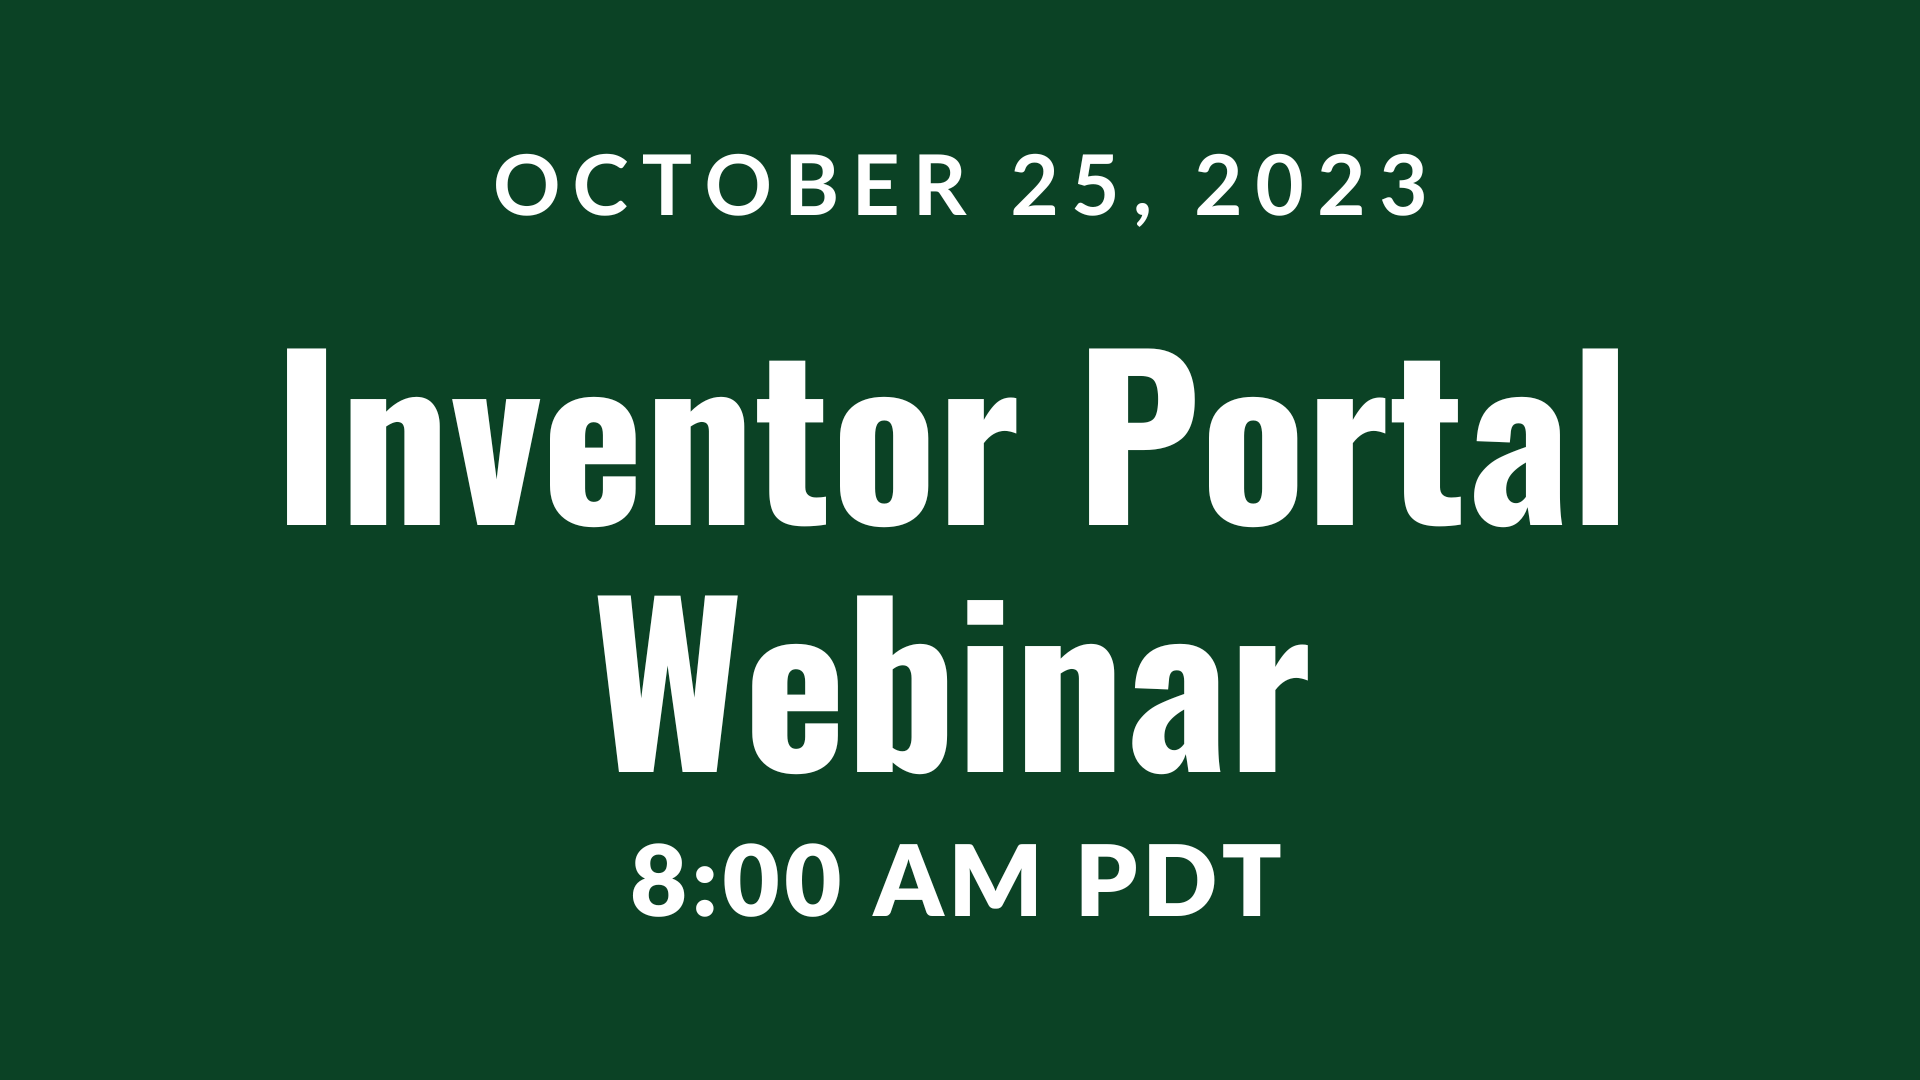 October 25, 2023, Inventor Portal Webinar 8:00 AM PDT